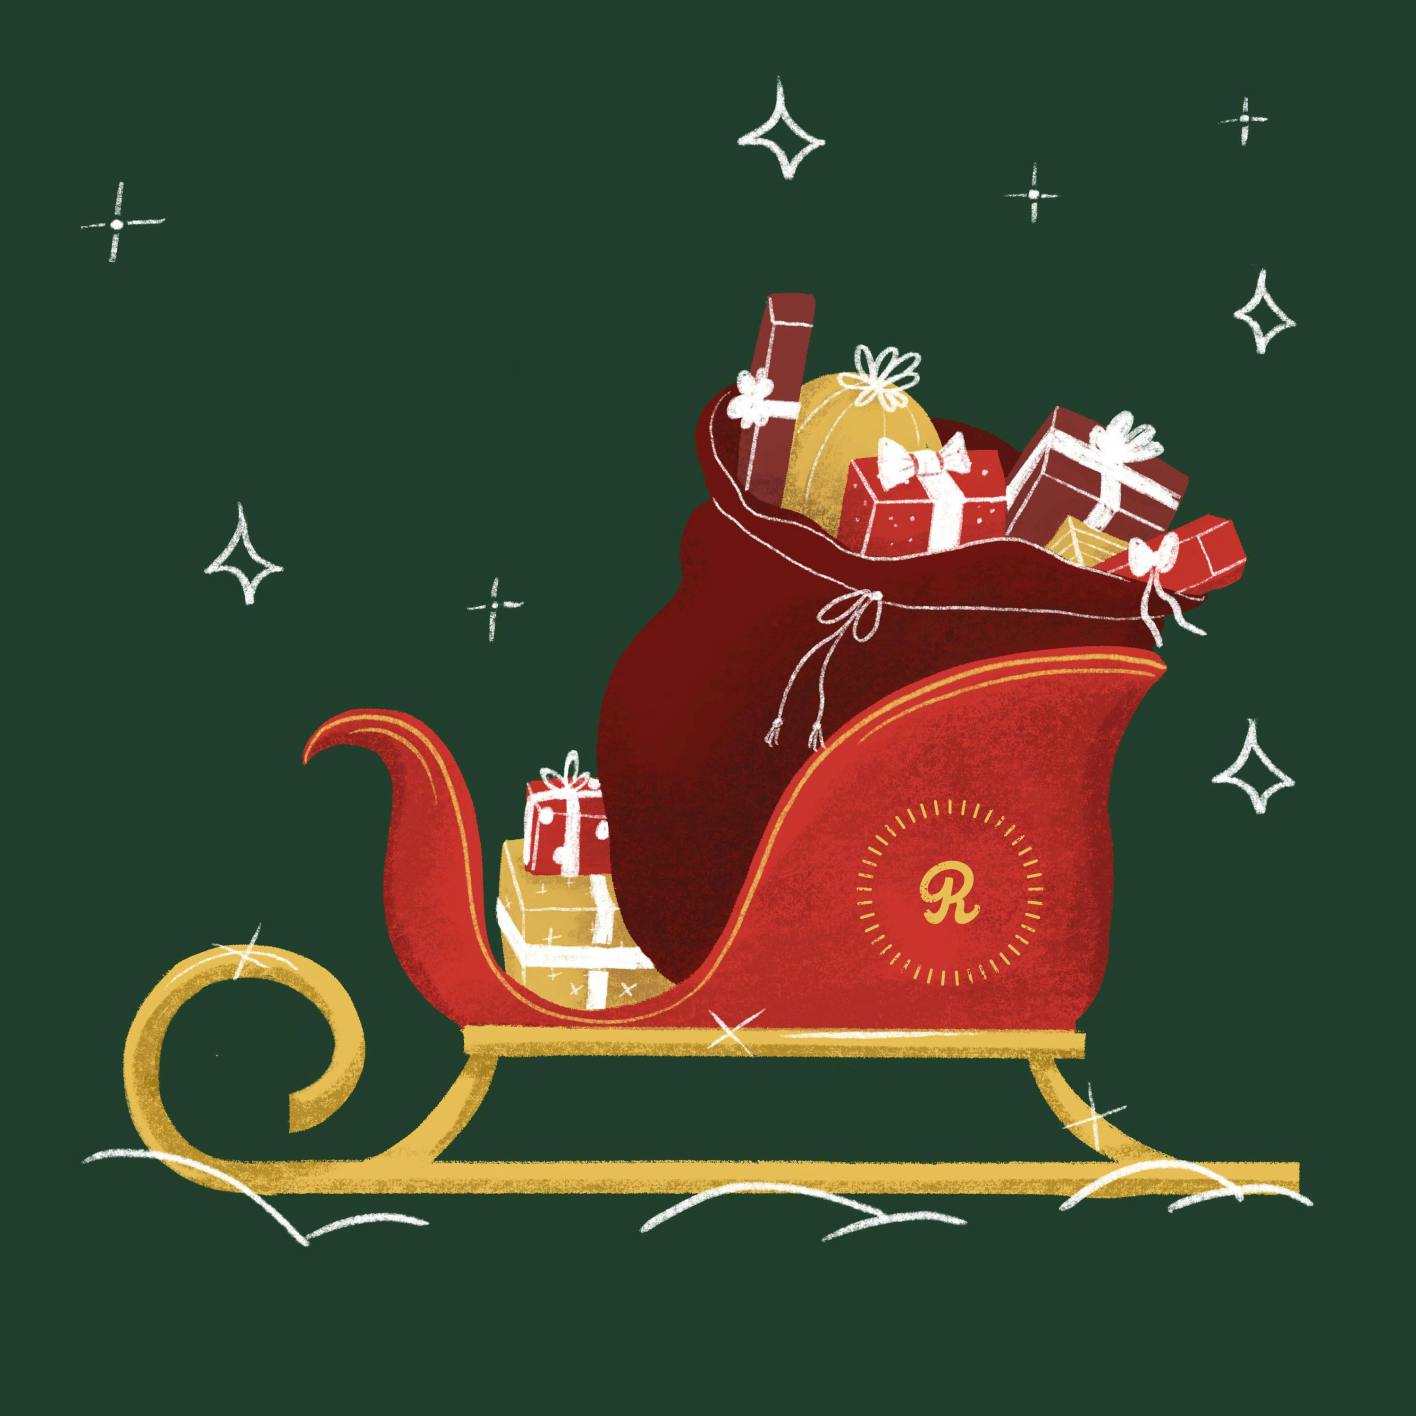 Reids Social Media Illustrations - Christmas